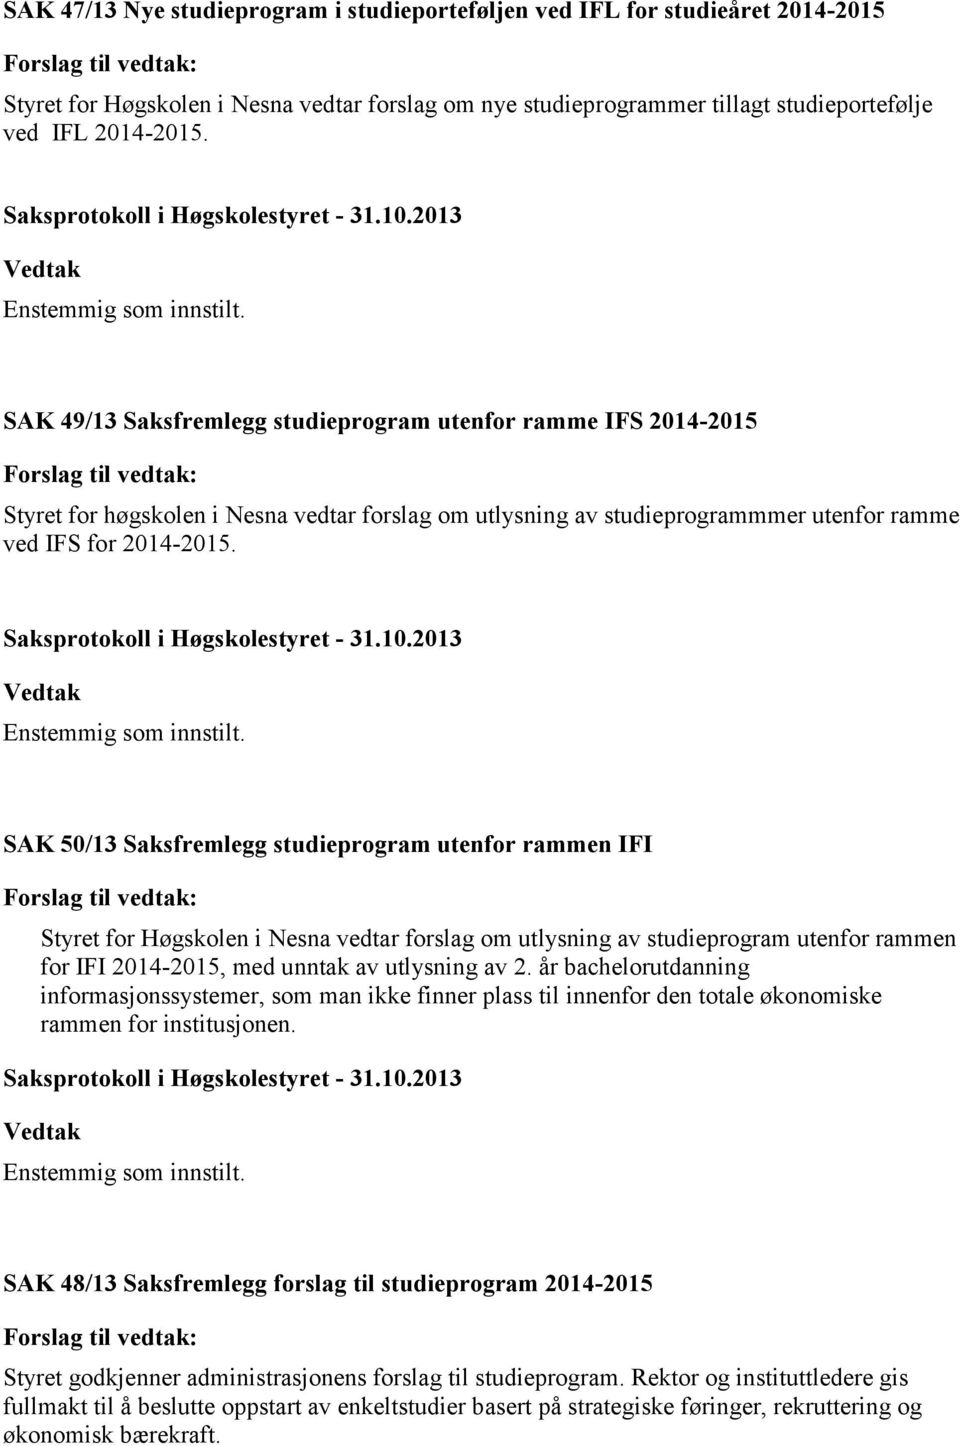 SAK 50/13 Saksfremlegg studieprogram utenfor rammen IFI Styret for Høgskolen i Nesna vedtar forslag om utlysning av studieprogram utenfor rammen for IFI 2014-2015, med unntak av utlysning av 2.